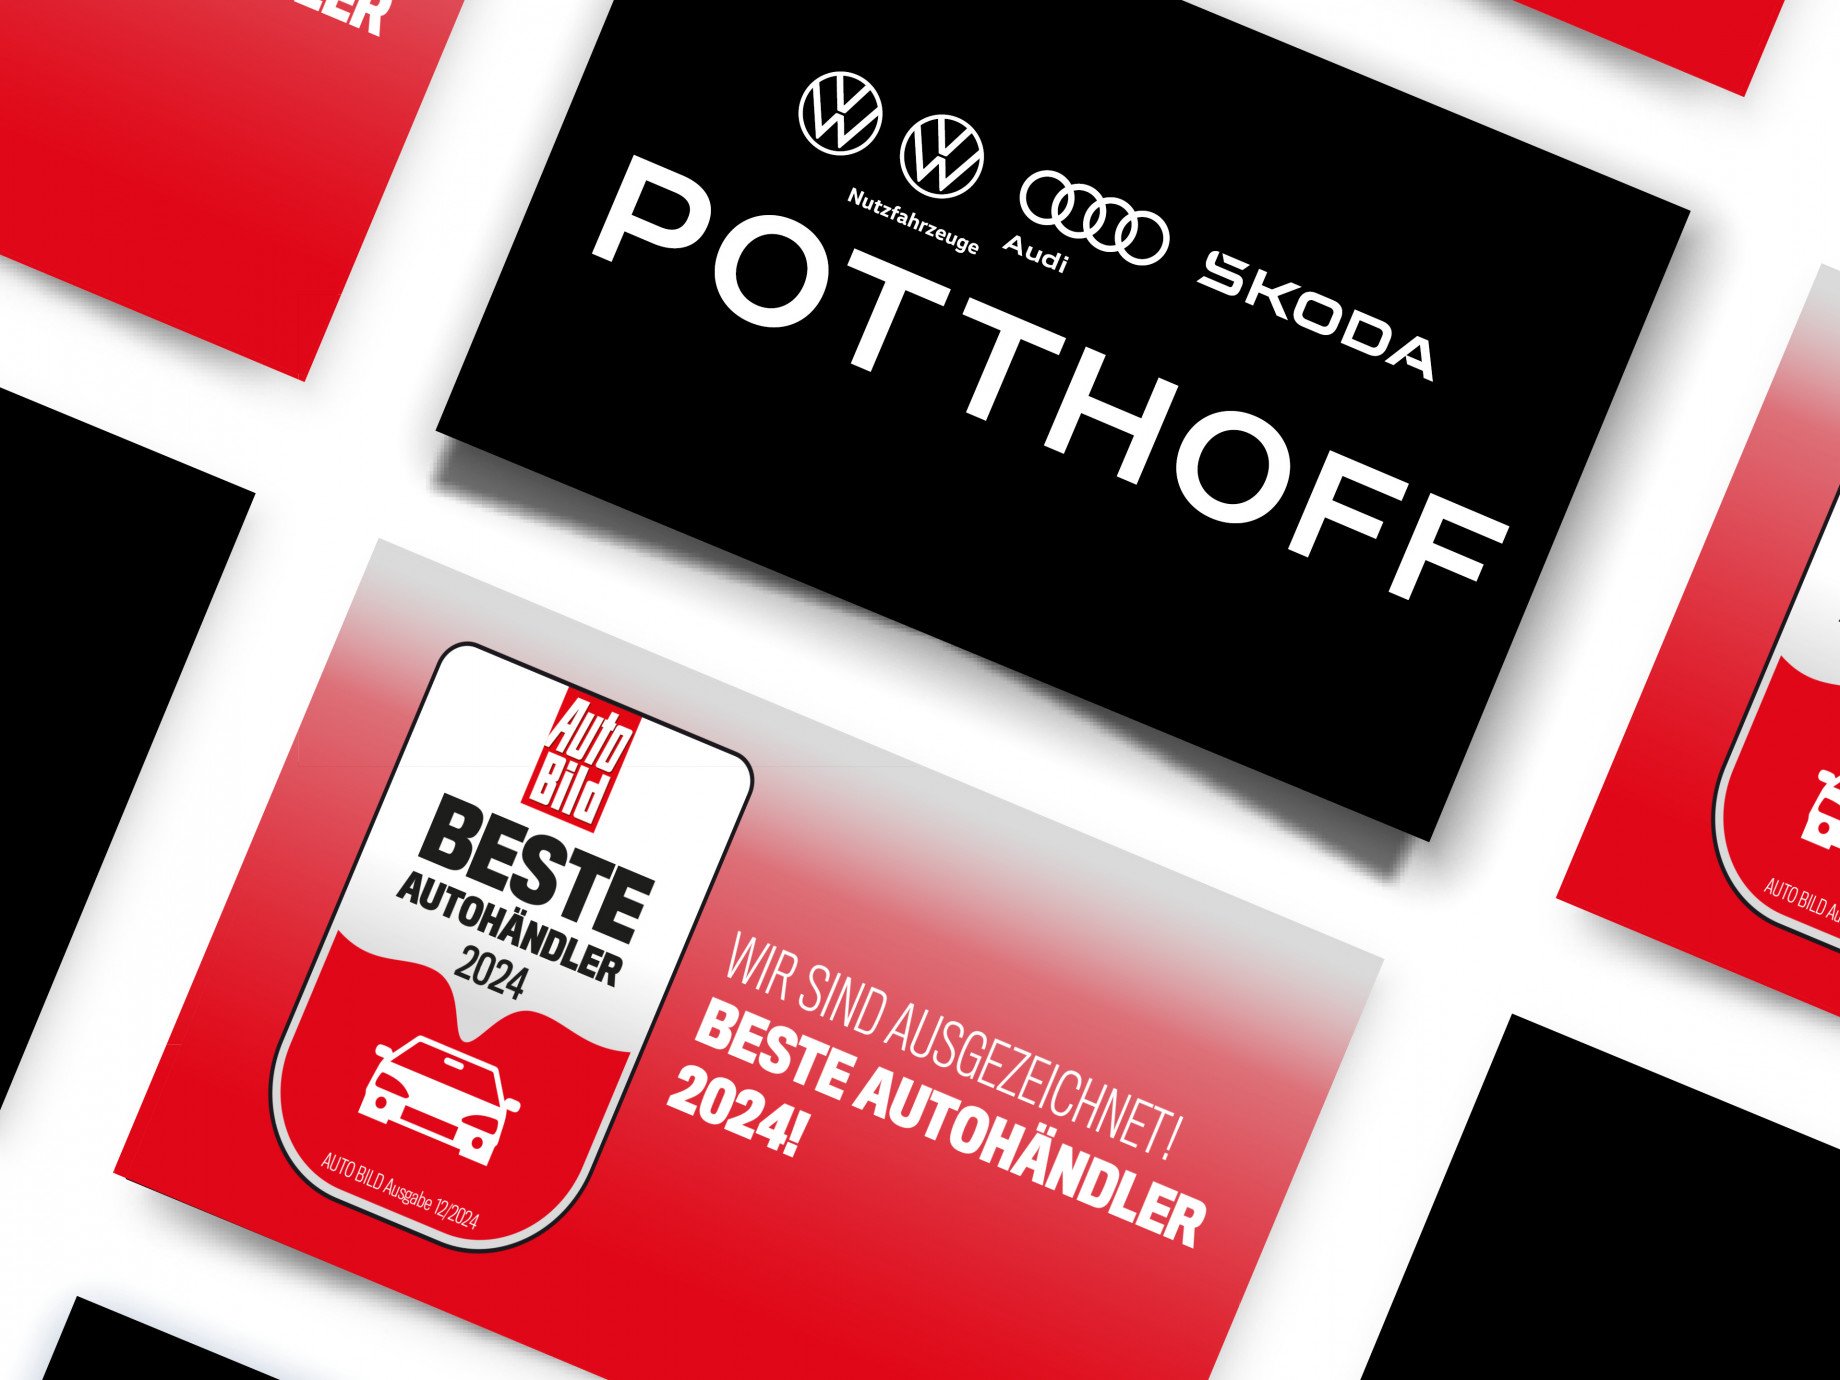 Autohaus POTTHOFF erneut unter den besten Autohändlern in Deutschland